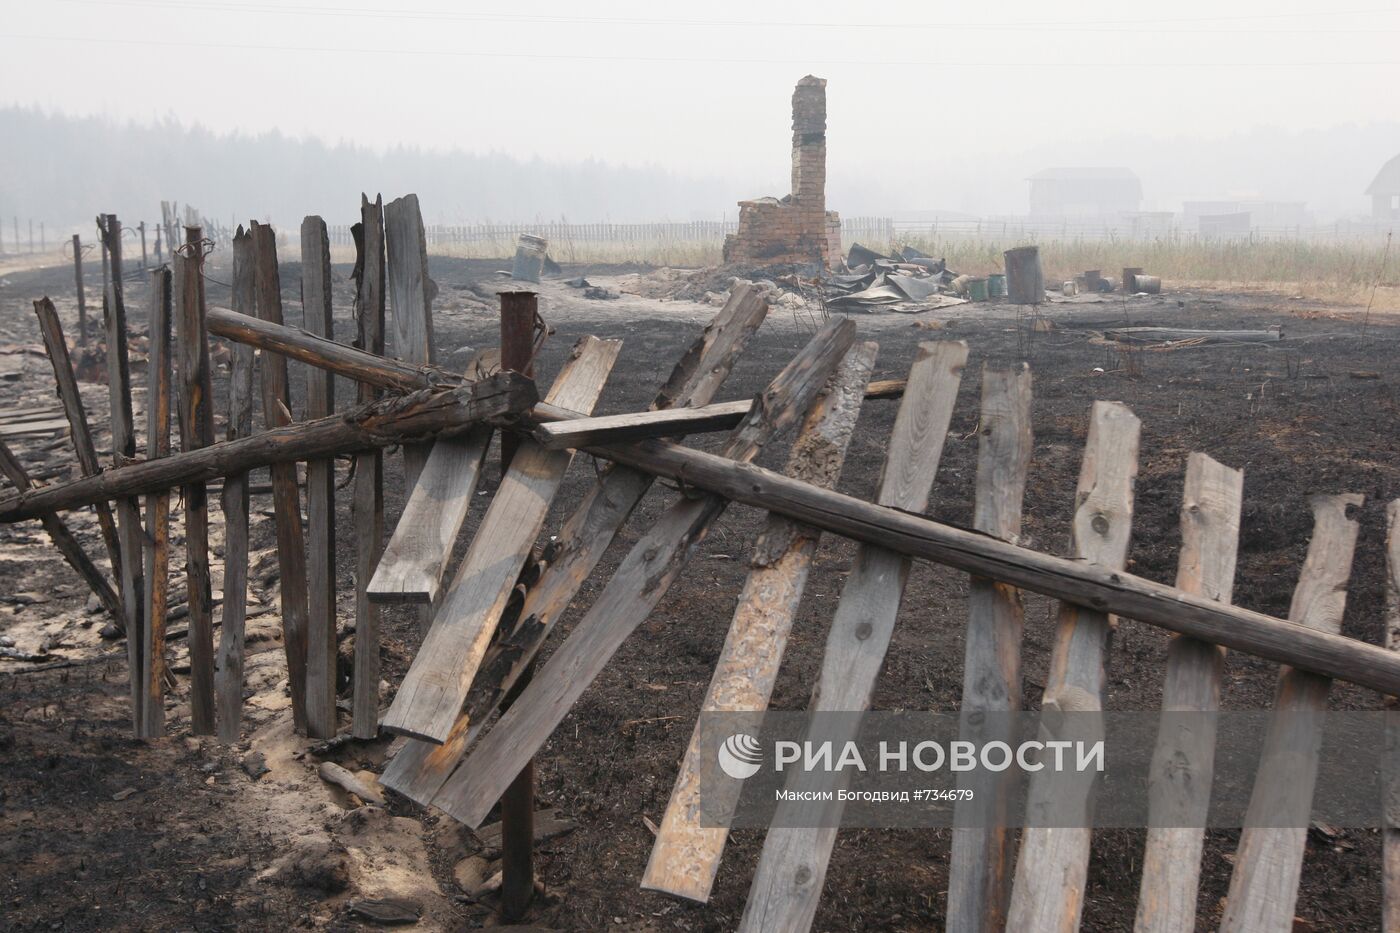 Последствия пожара в поселке Красный Бакин Нижегородской области